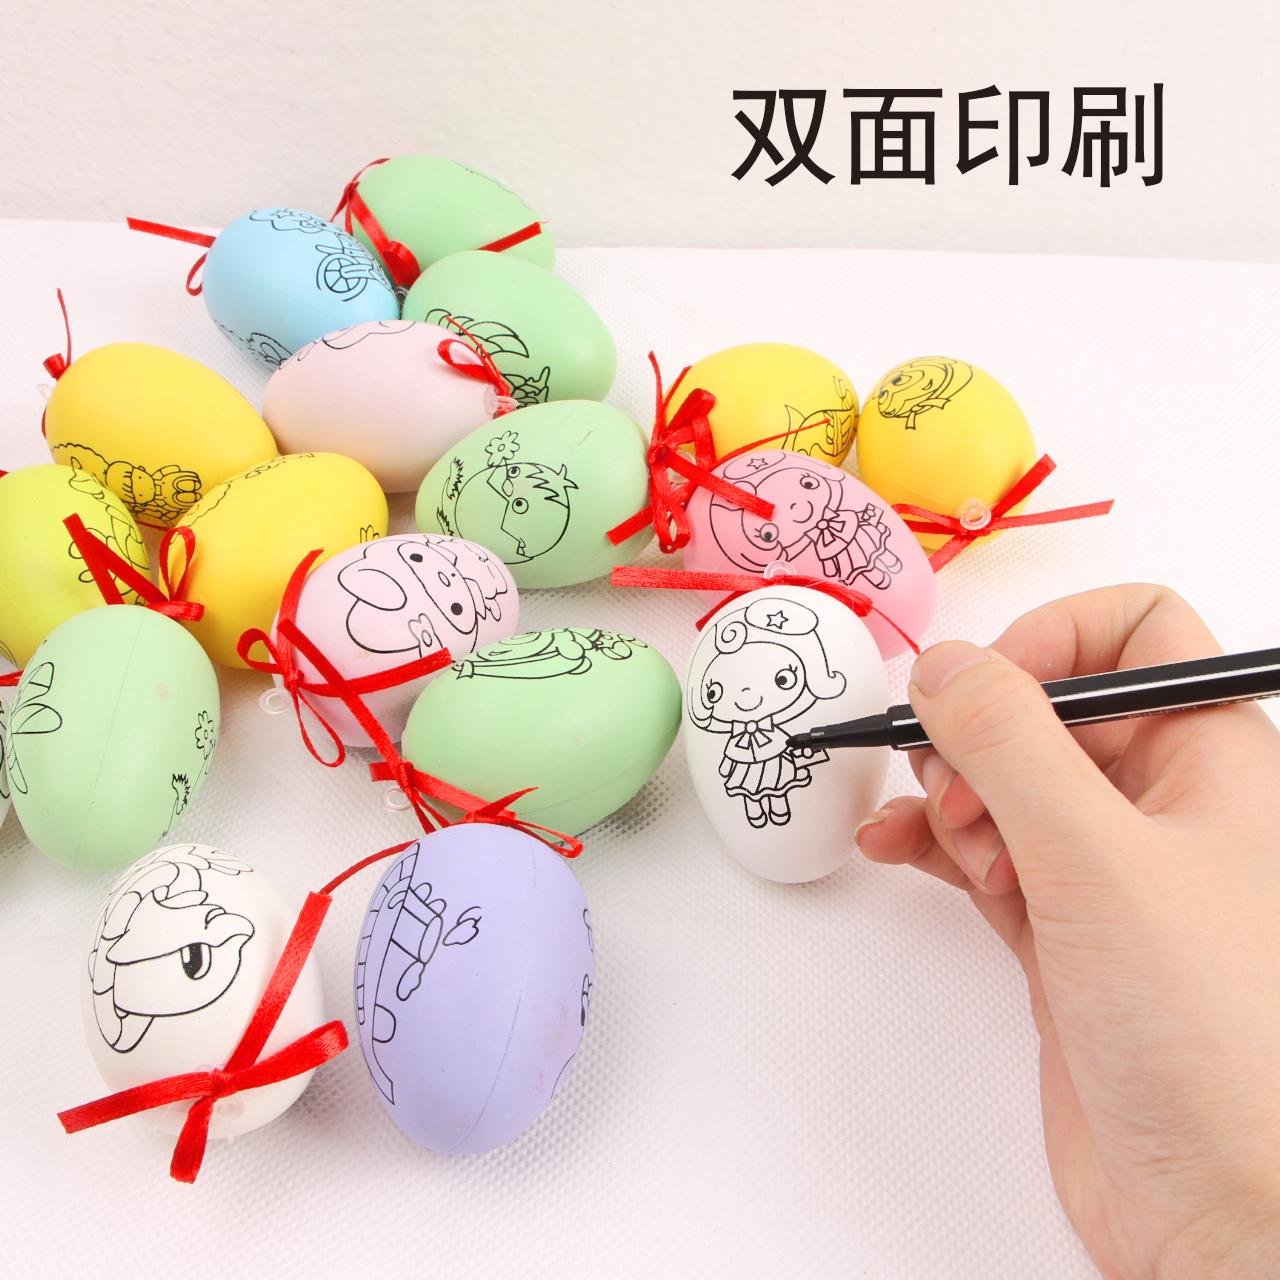 双面印刷图案彩蛋diy儿童手工创意塑料彩绘涂鸦上色彩色鸡蛋壳6cm